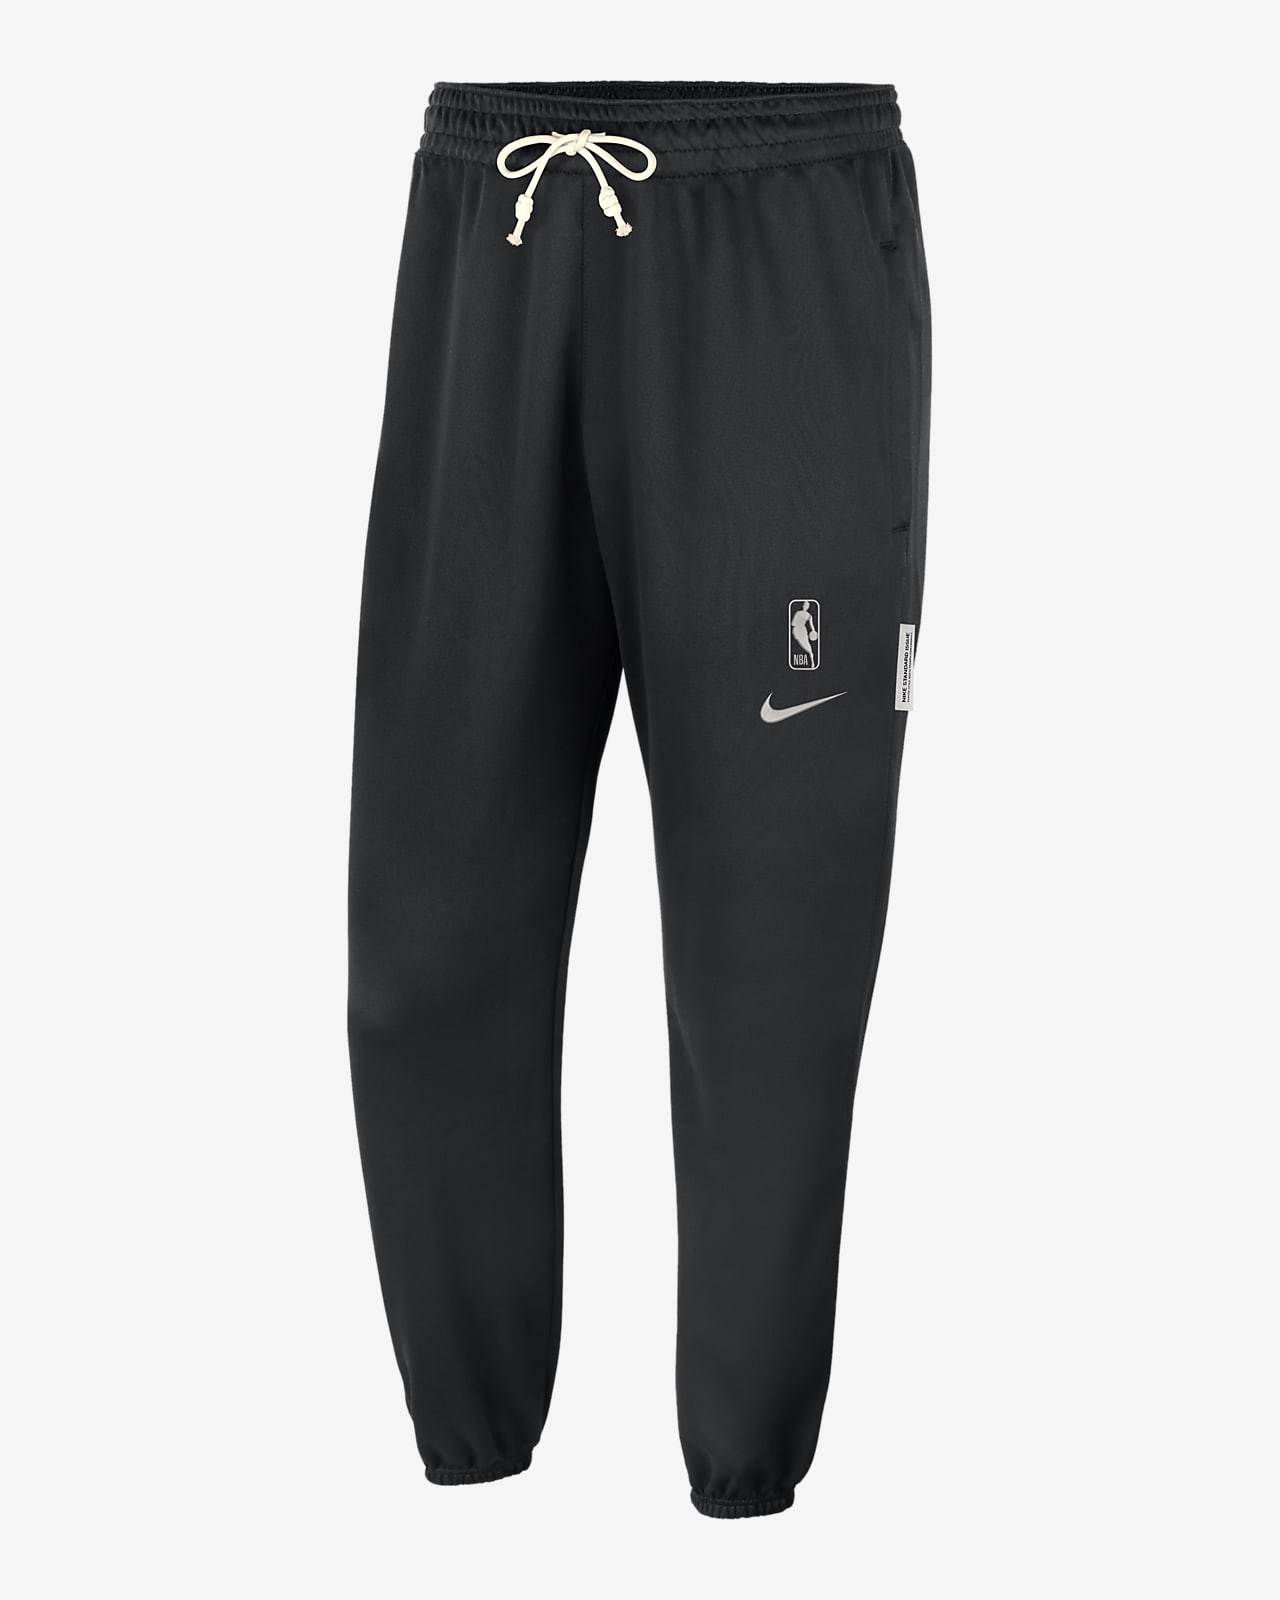 Pants Nike Dri-FIT de la NBA para hombre Team 31 Standard Issue